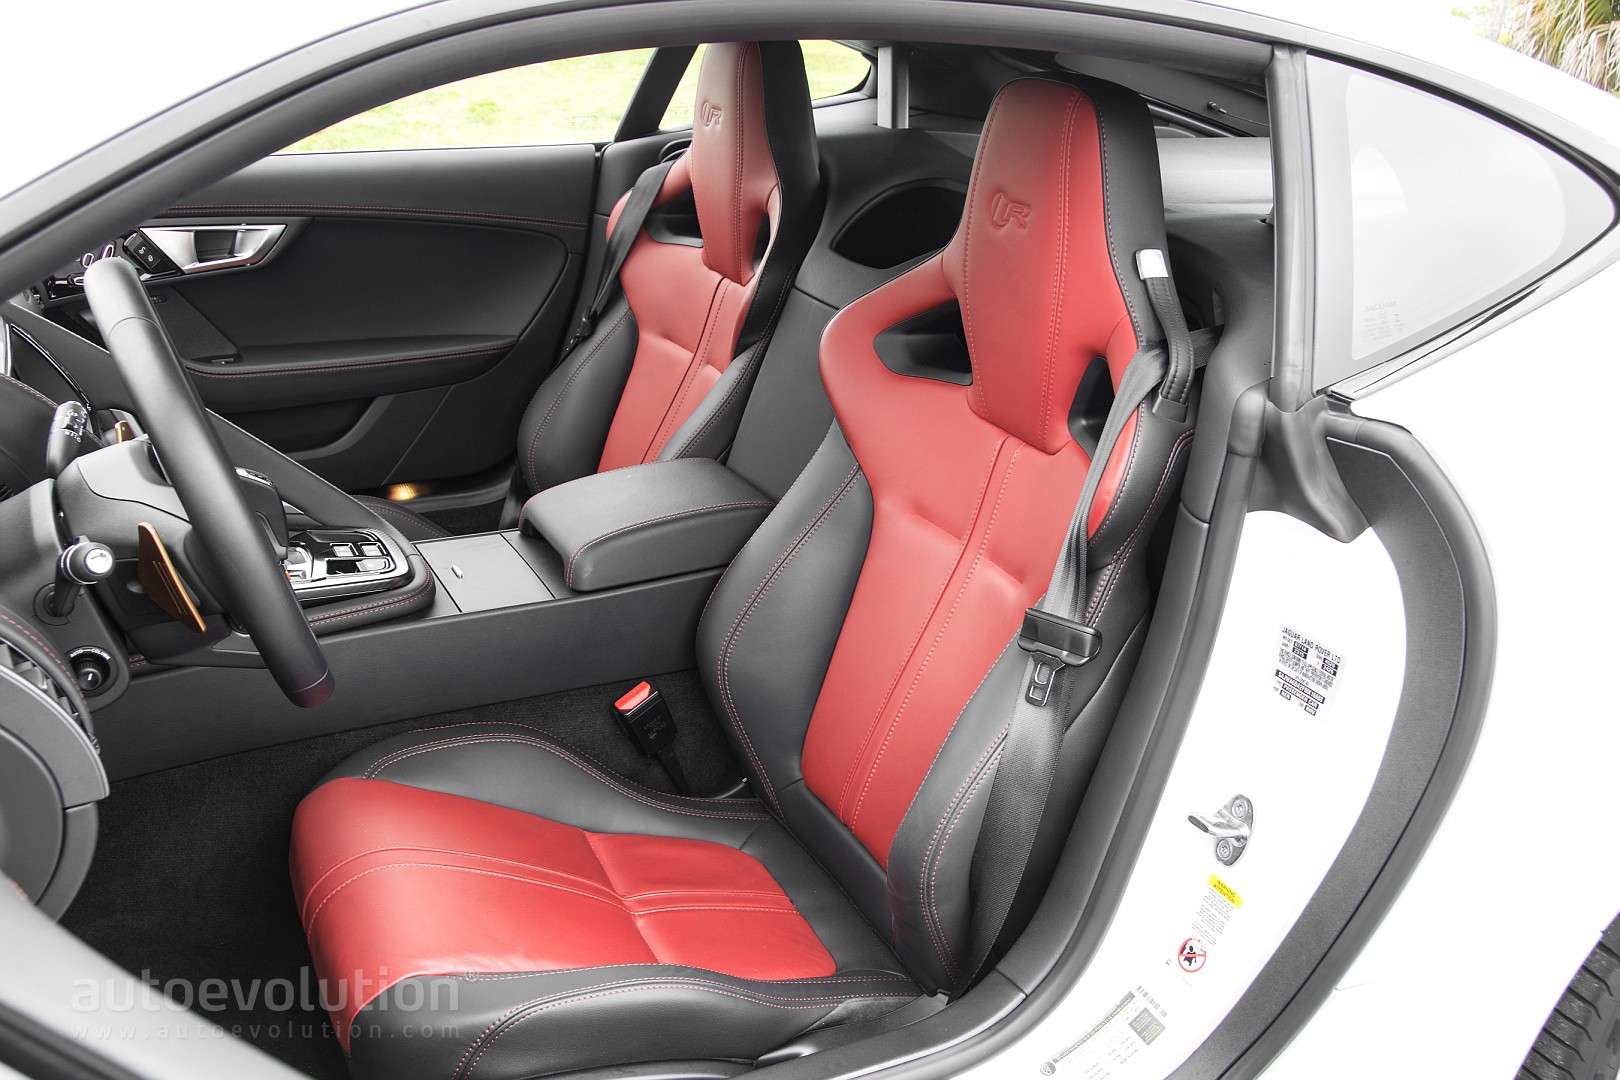 2015 Jaguar F Type R Coupe Review Autoevolution